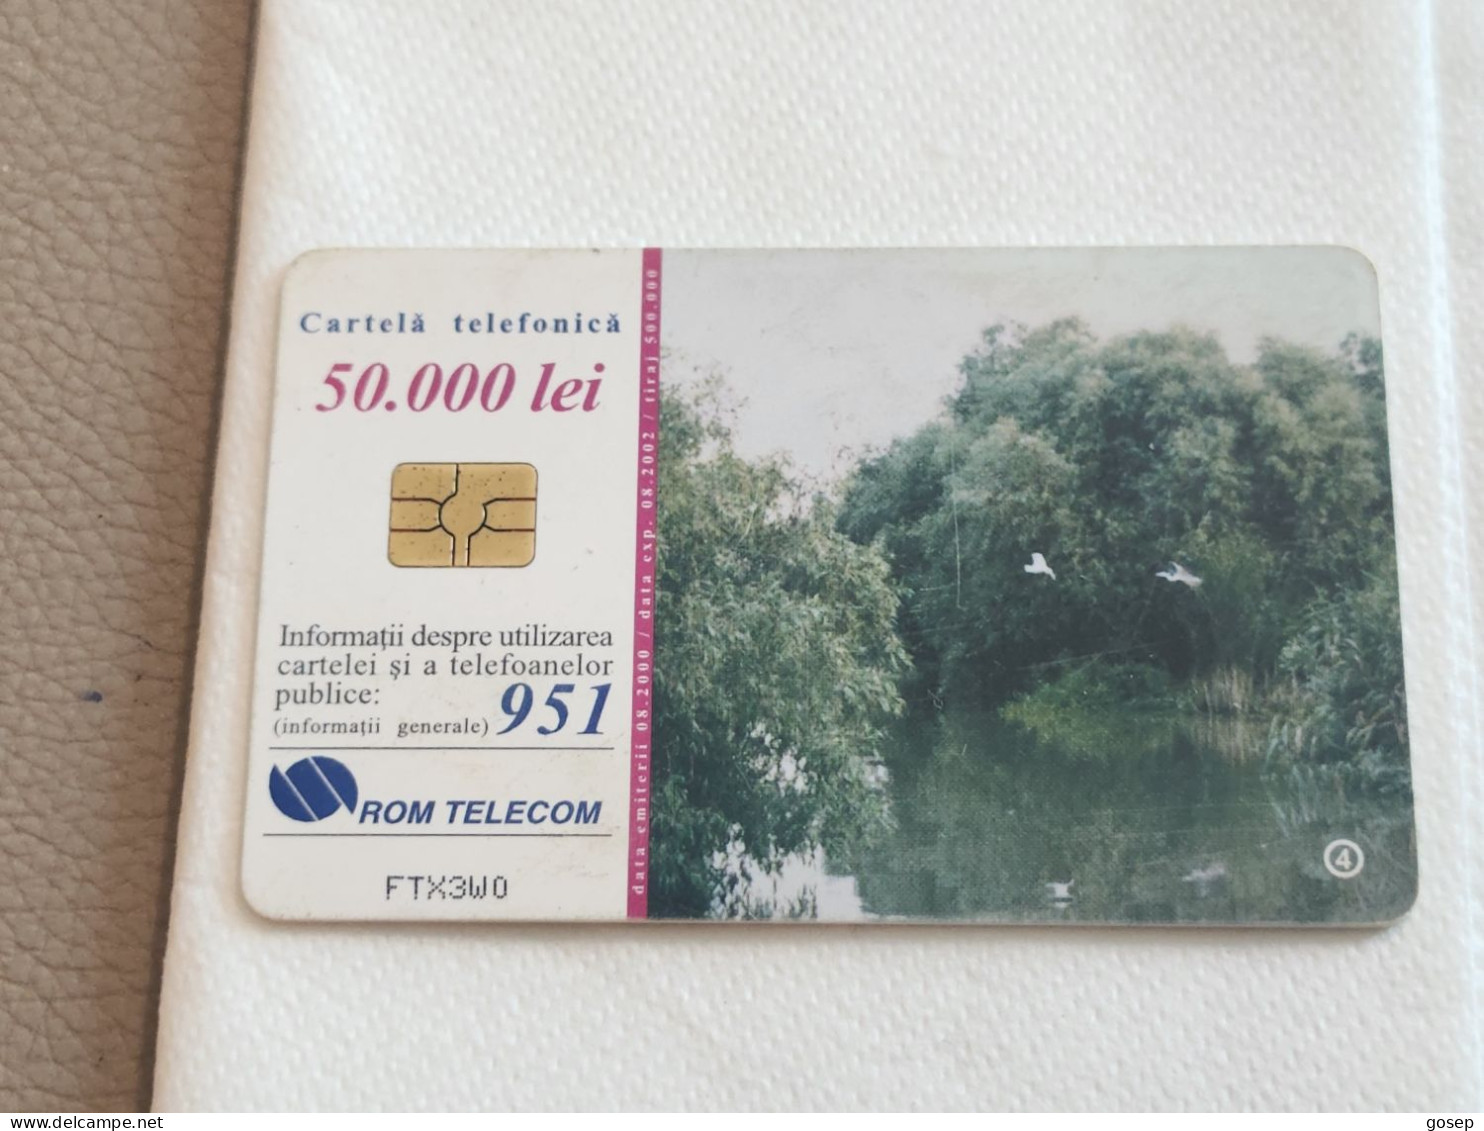 ROMANIA-(RO-ROM-0066C)-The Danube's Delta 4-(73)-(50.000 Lei)-(FTX3W0)-used Card+1card Prepiad Free - Romania